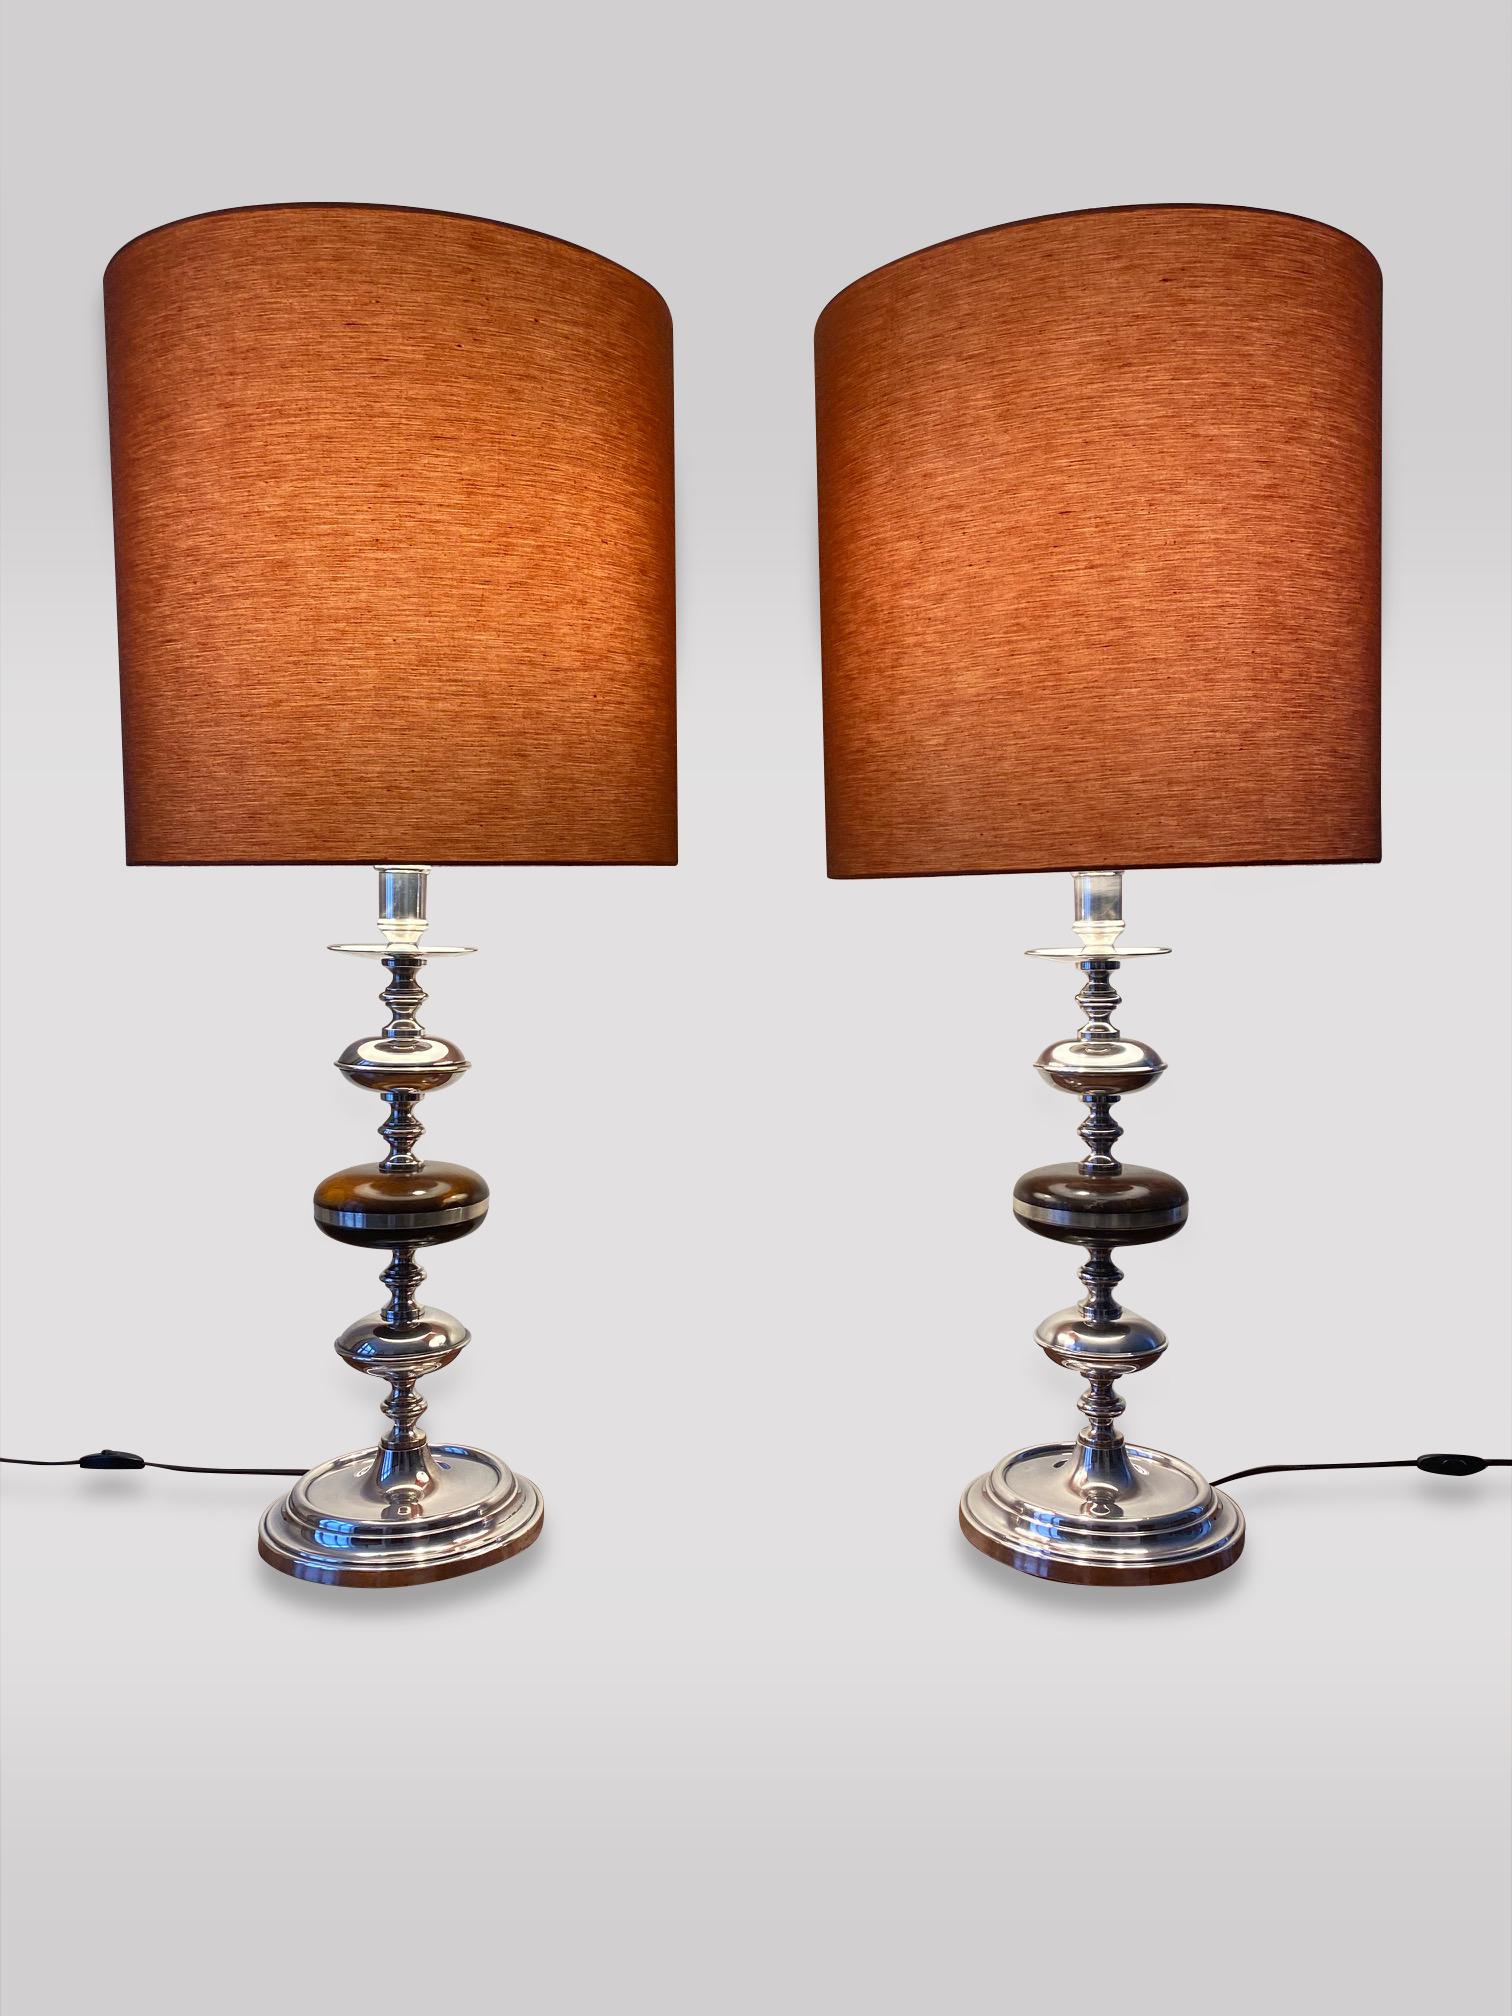 Une paire très décorative de lampes de table en forme de candélabre argenté avec de hauts abat-jour circulaires de couleur orange. En parfait état de marche. 

Les mesures de l'abat-jour sont 45cm de haut et 46cm de diamètre. 
Les mesures du